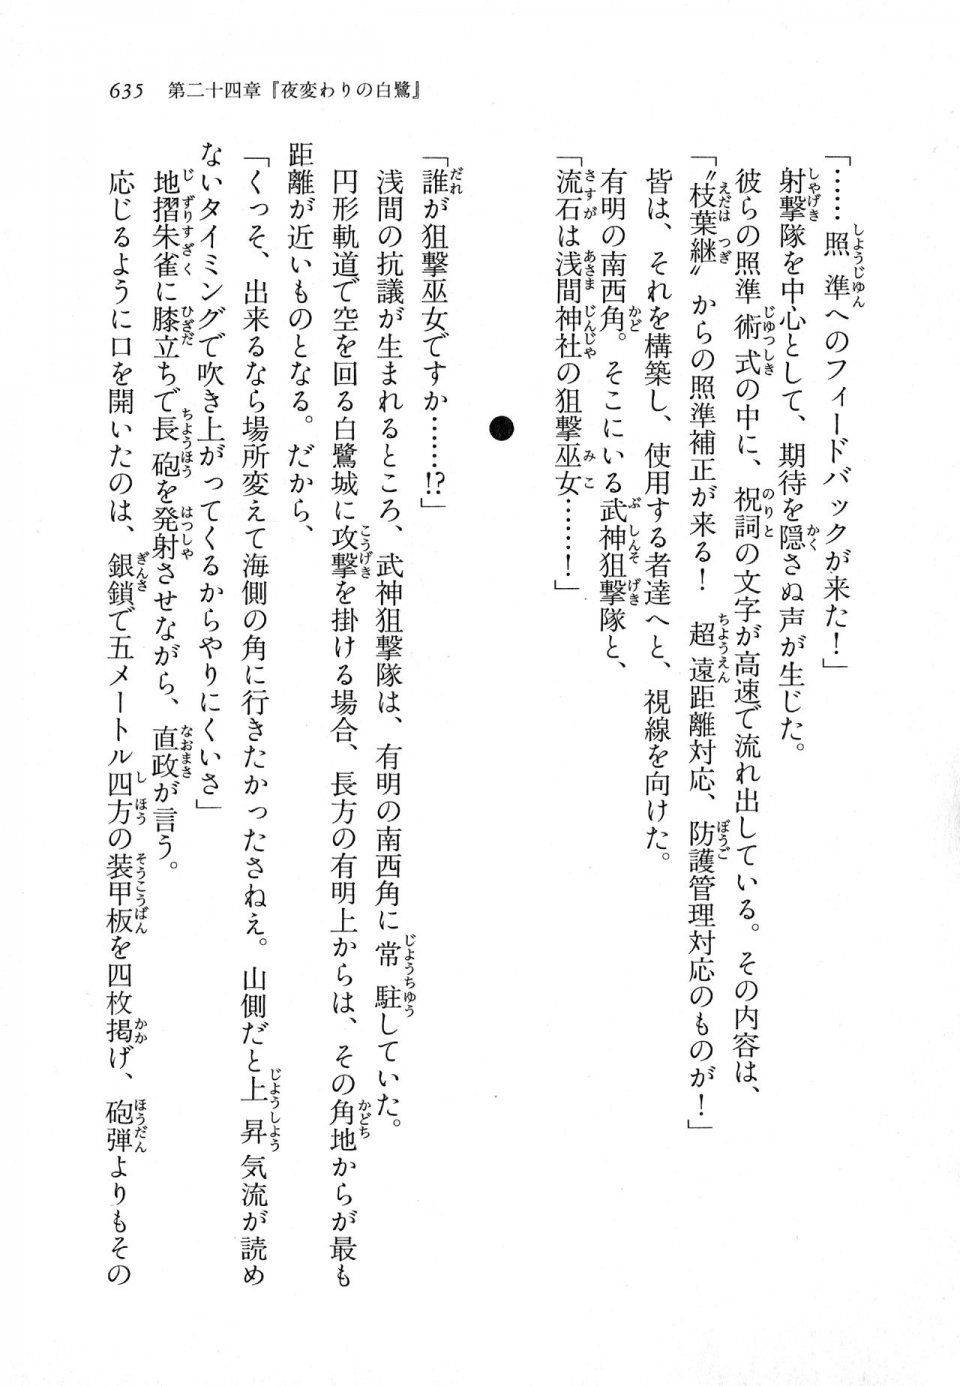 Kyoukai Senjou no Horizon LN Vol 11(5A) - Photo #635